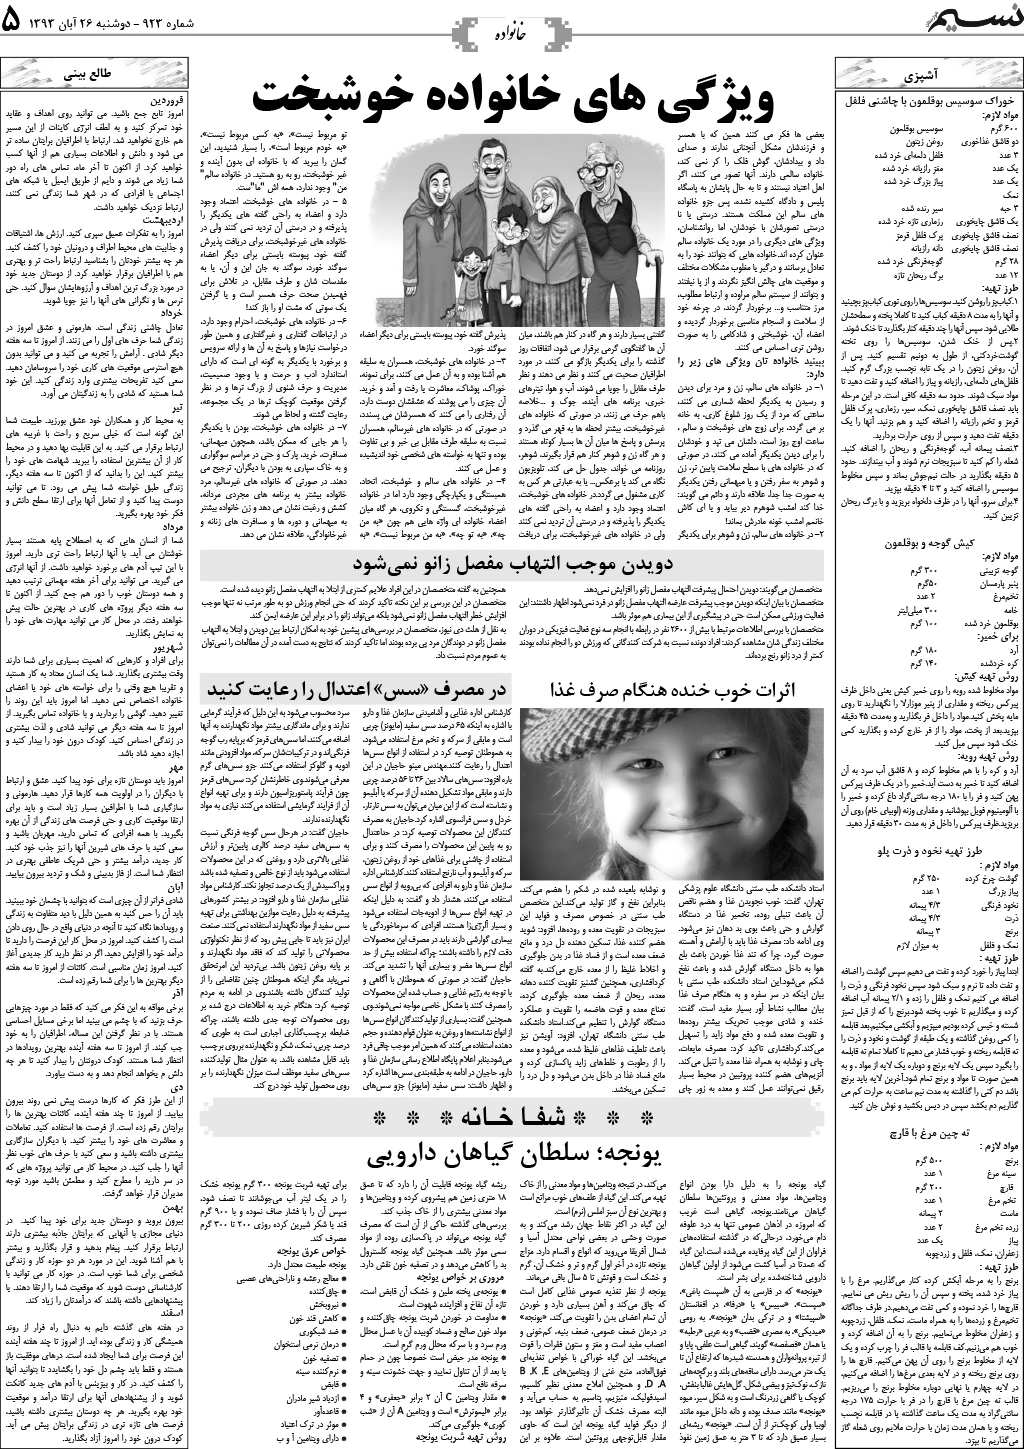 صفحه خانواده روزنامه نسیم شماره 923